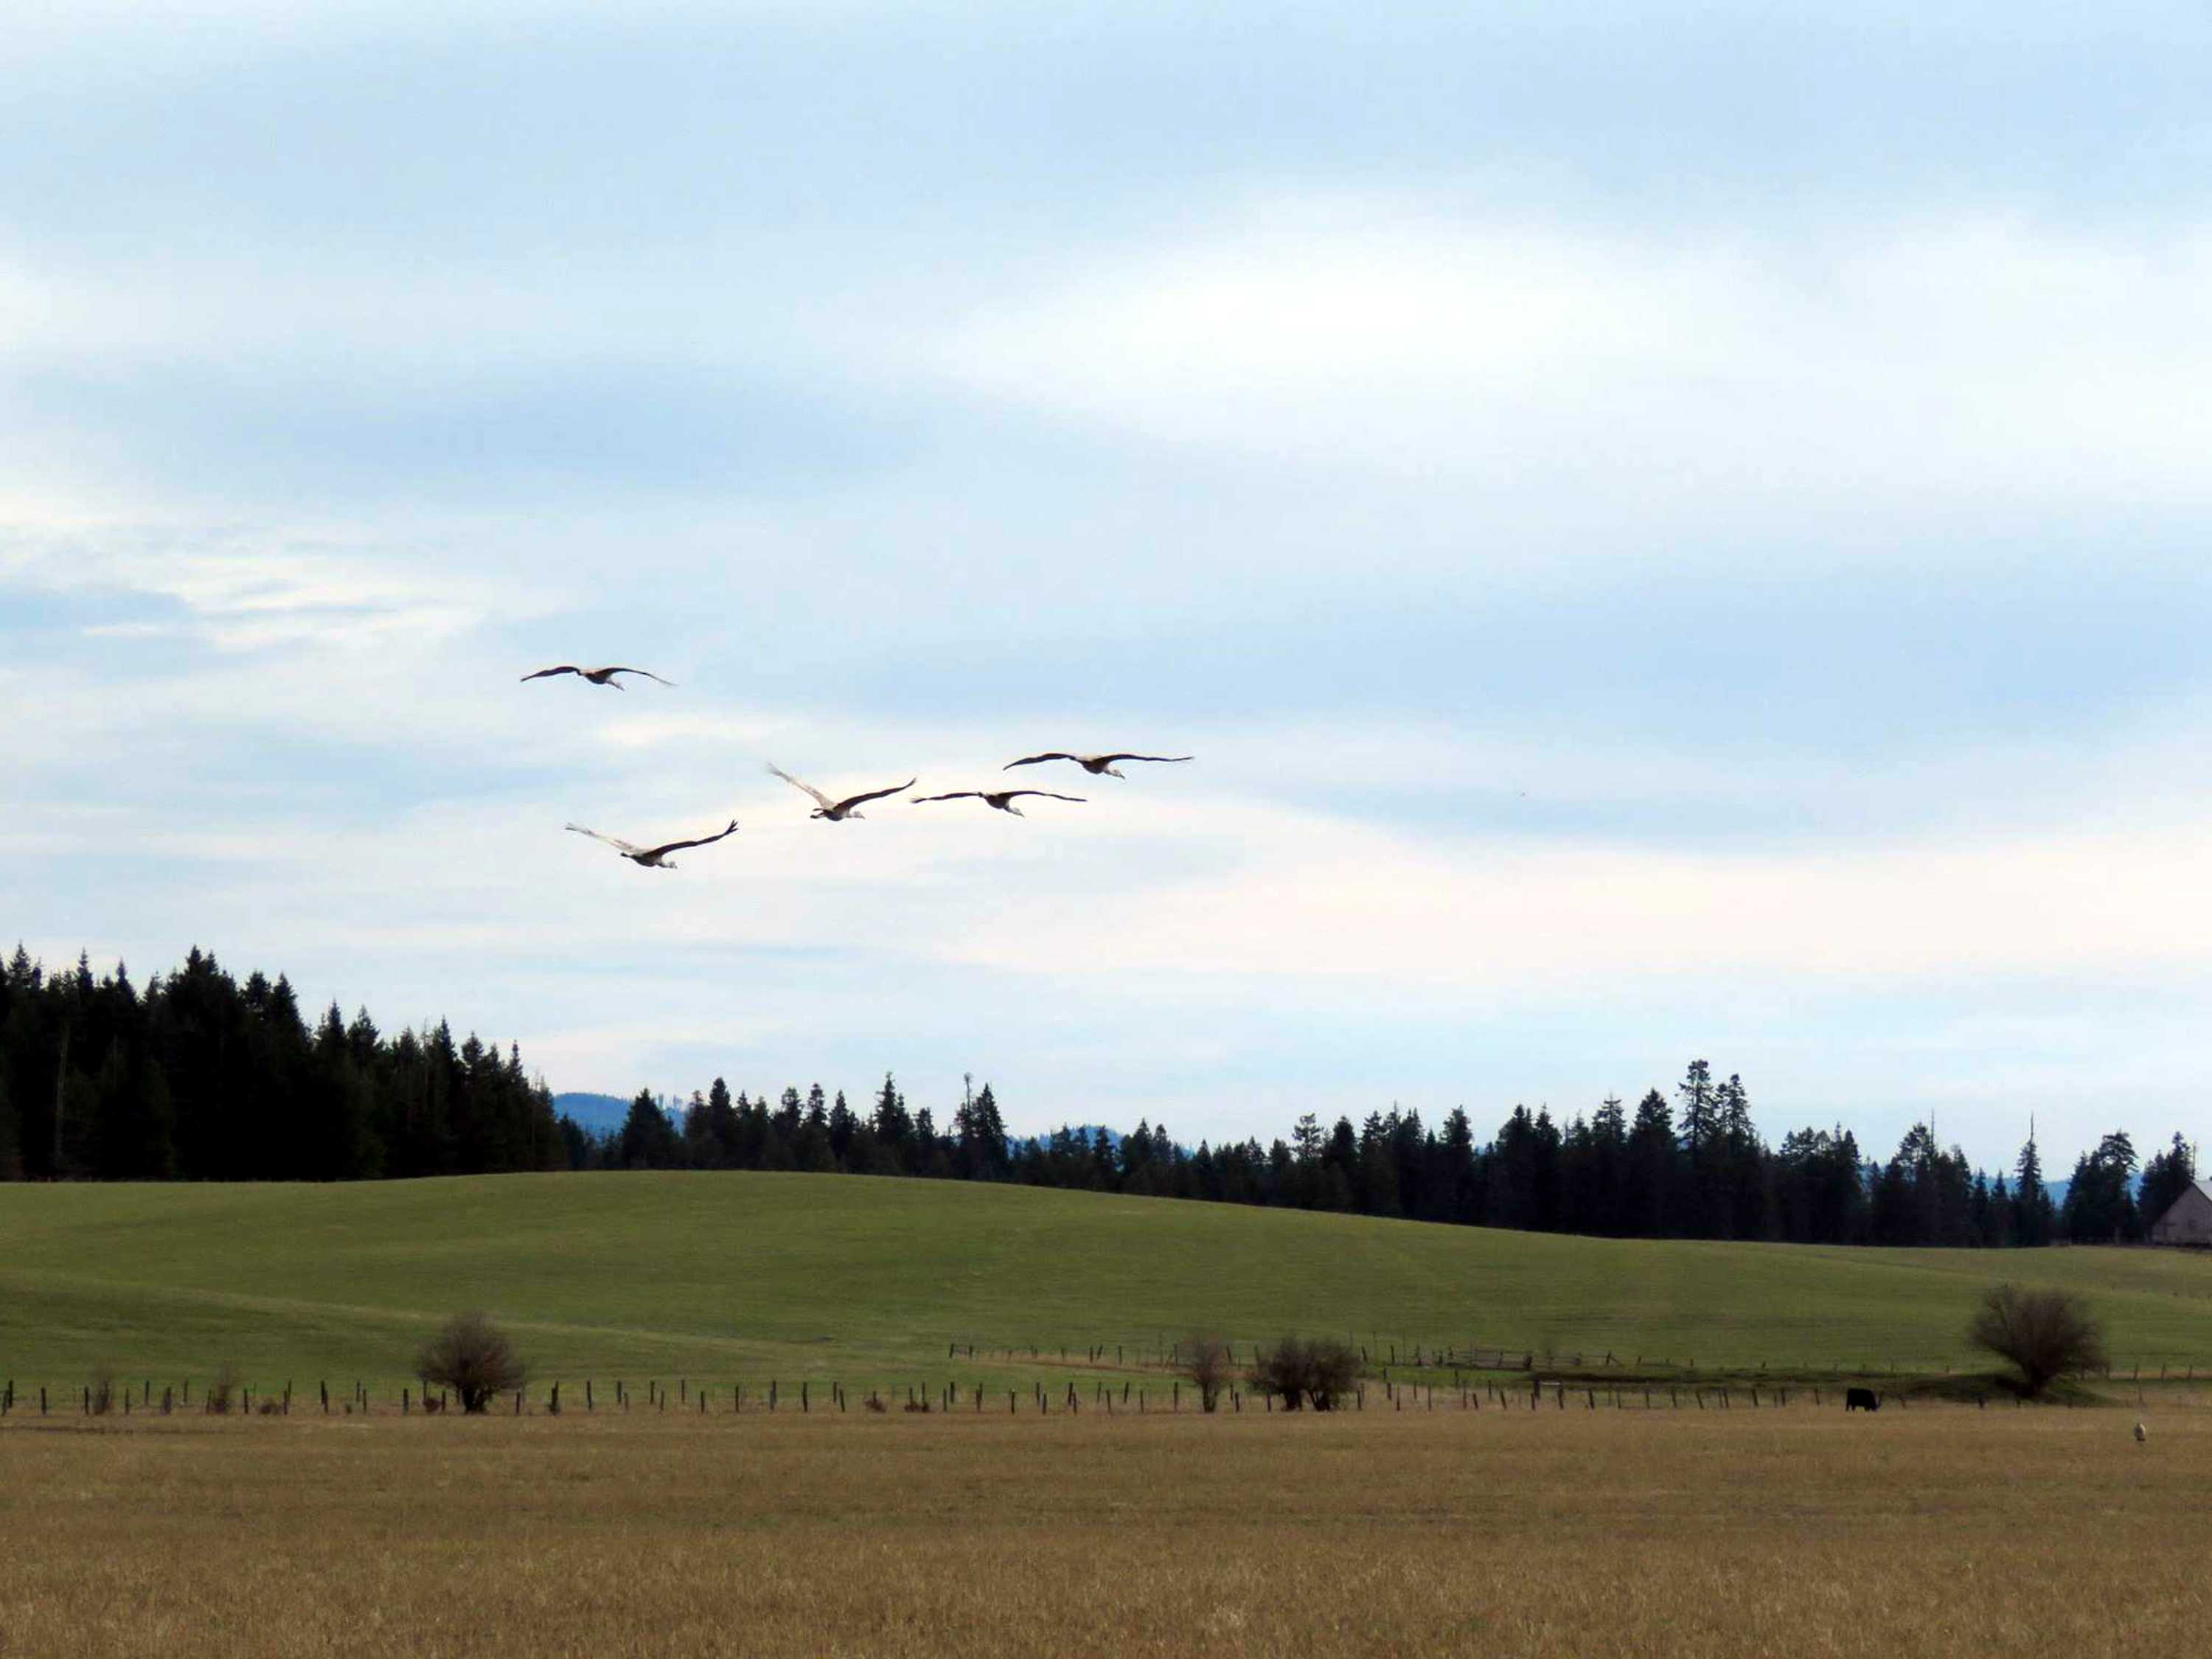 Birds in flight across a grassy field.